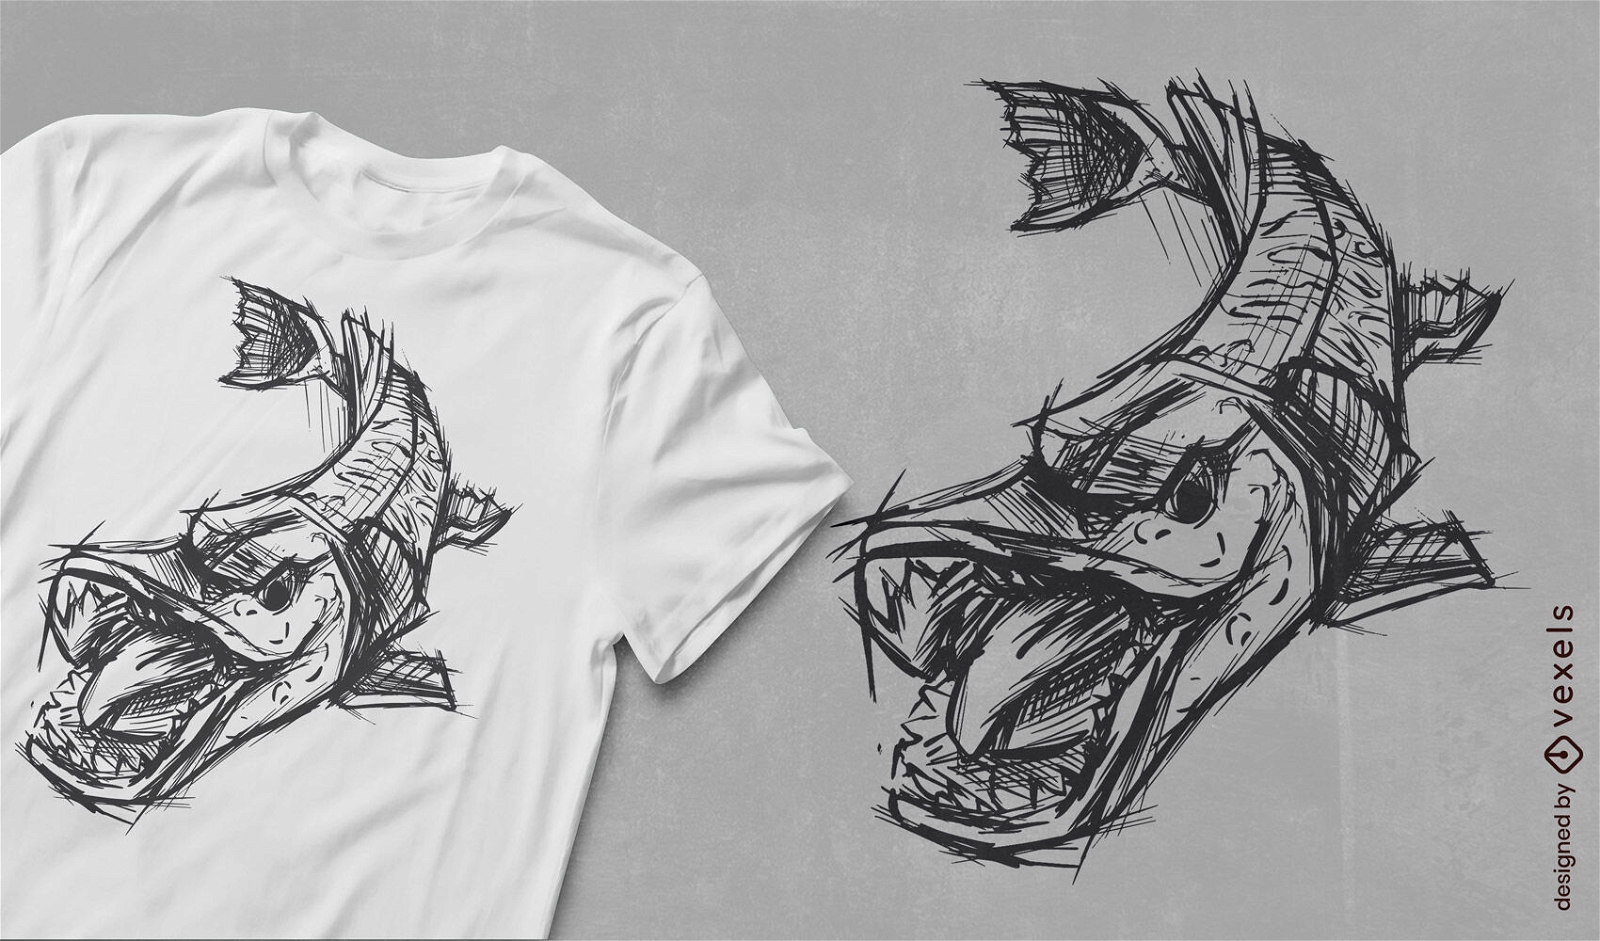 Dise?o de camiseta de boceto de animal marino de pescado